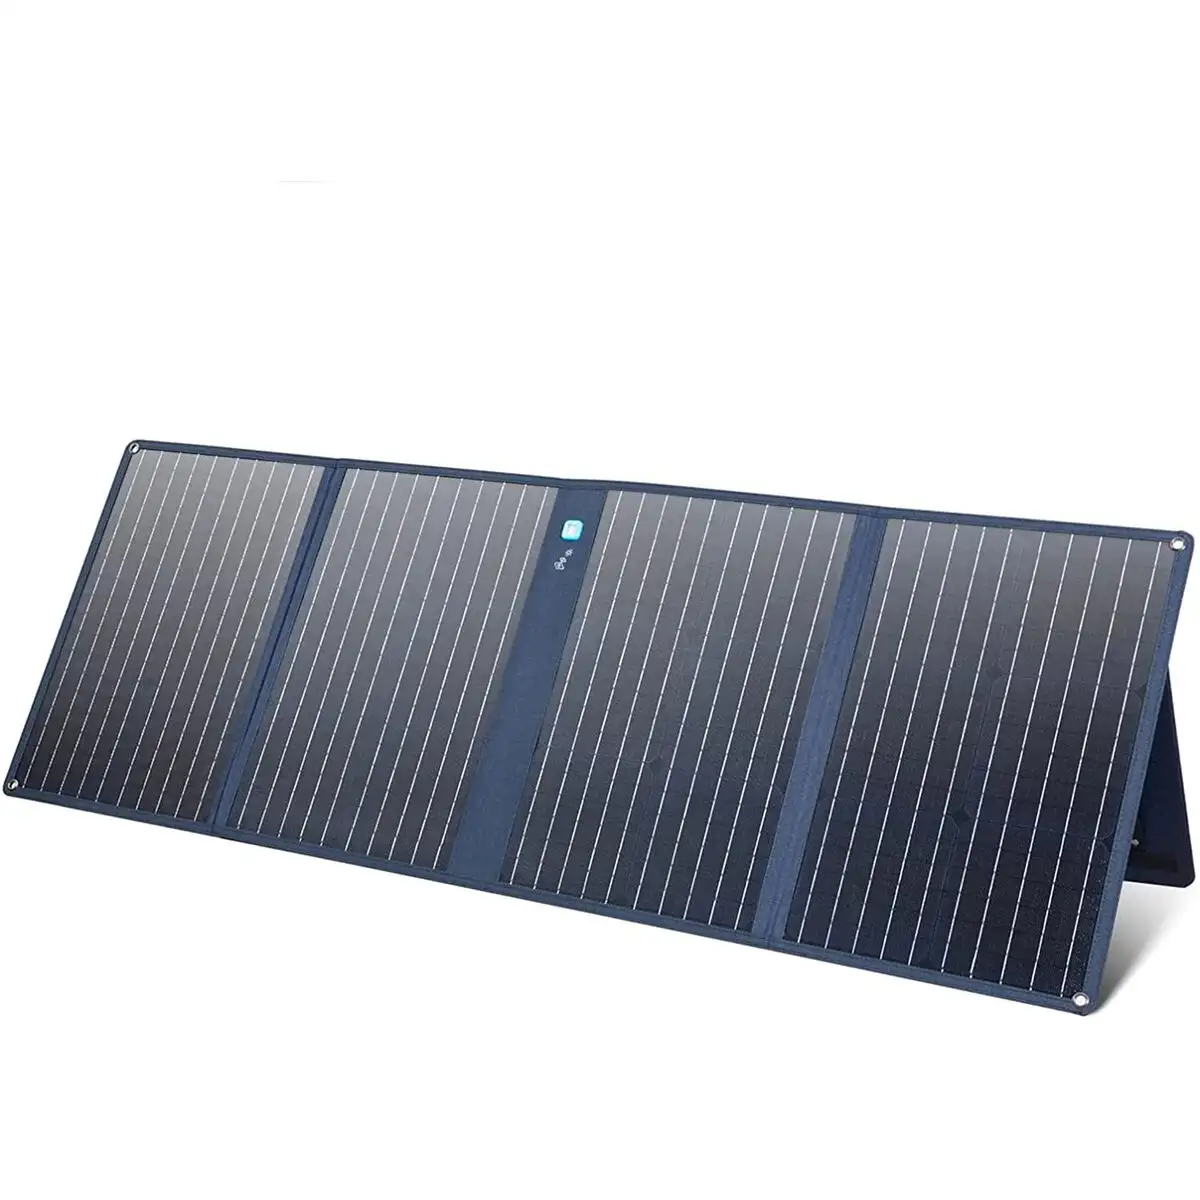 Panneau solaire photovoltaique anker 625_8562. DIAYTAR SENEGAL - Où Choisir Devient une Découverte. Explorez notre boutique en ligne et trouvez des articles qui vous surprennent et vous ravissent à chaque clic.